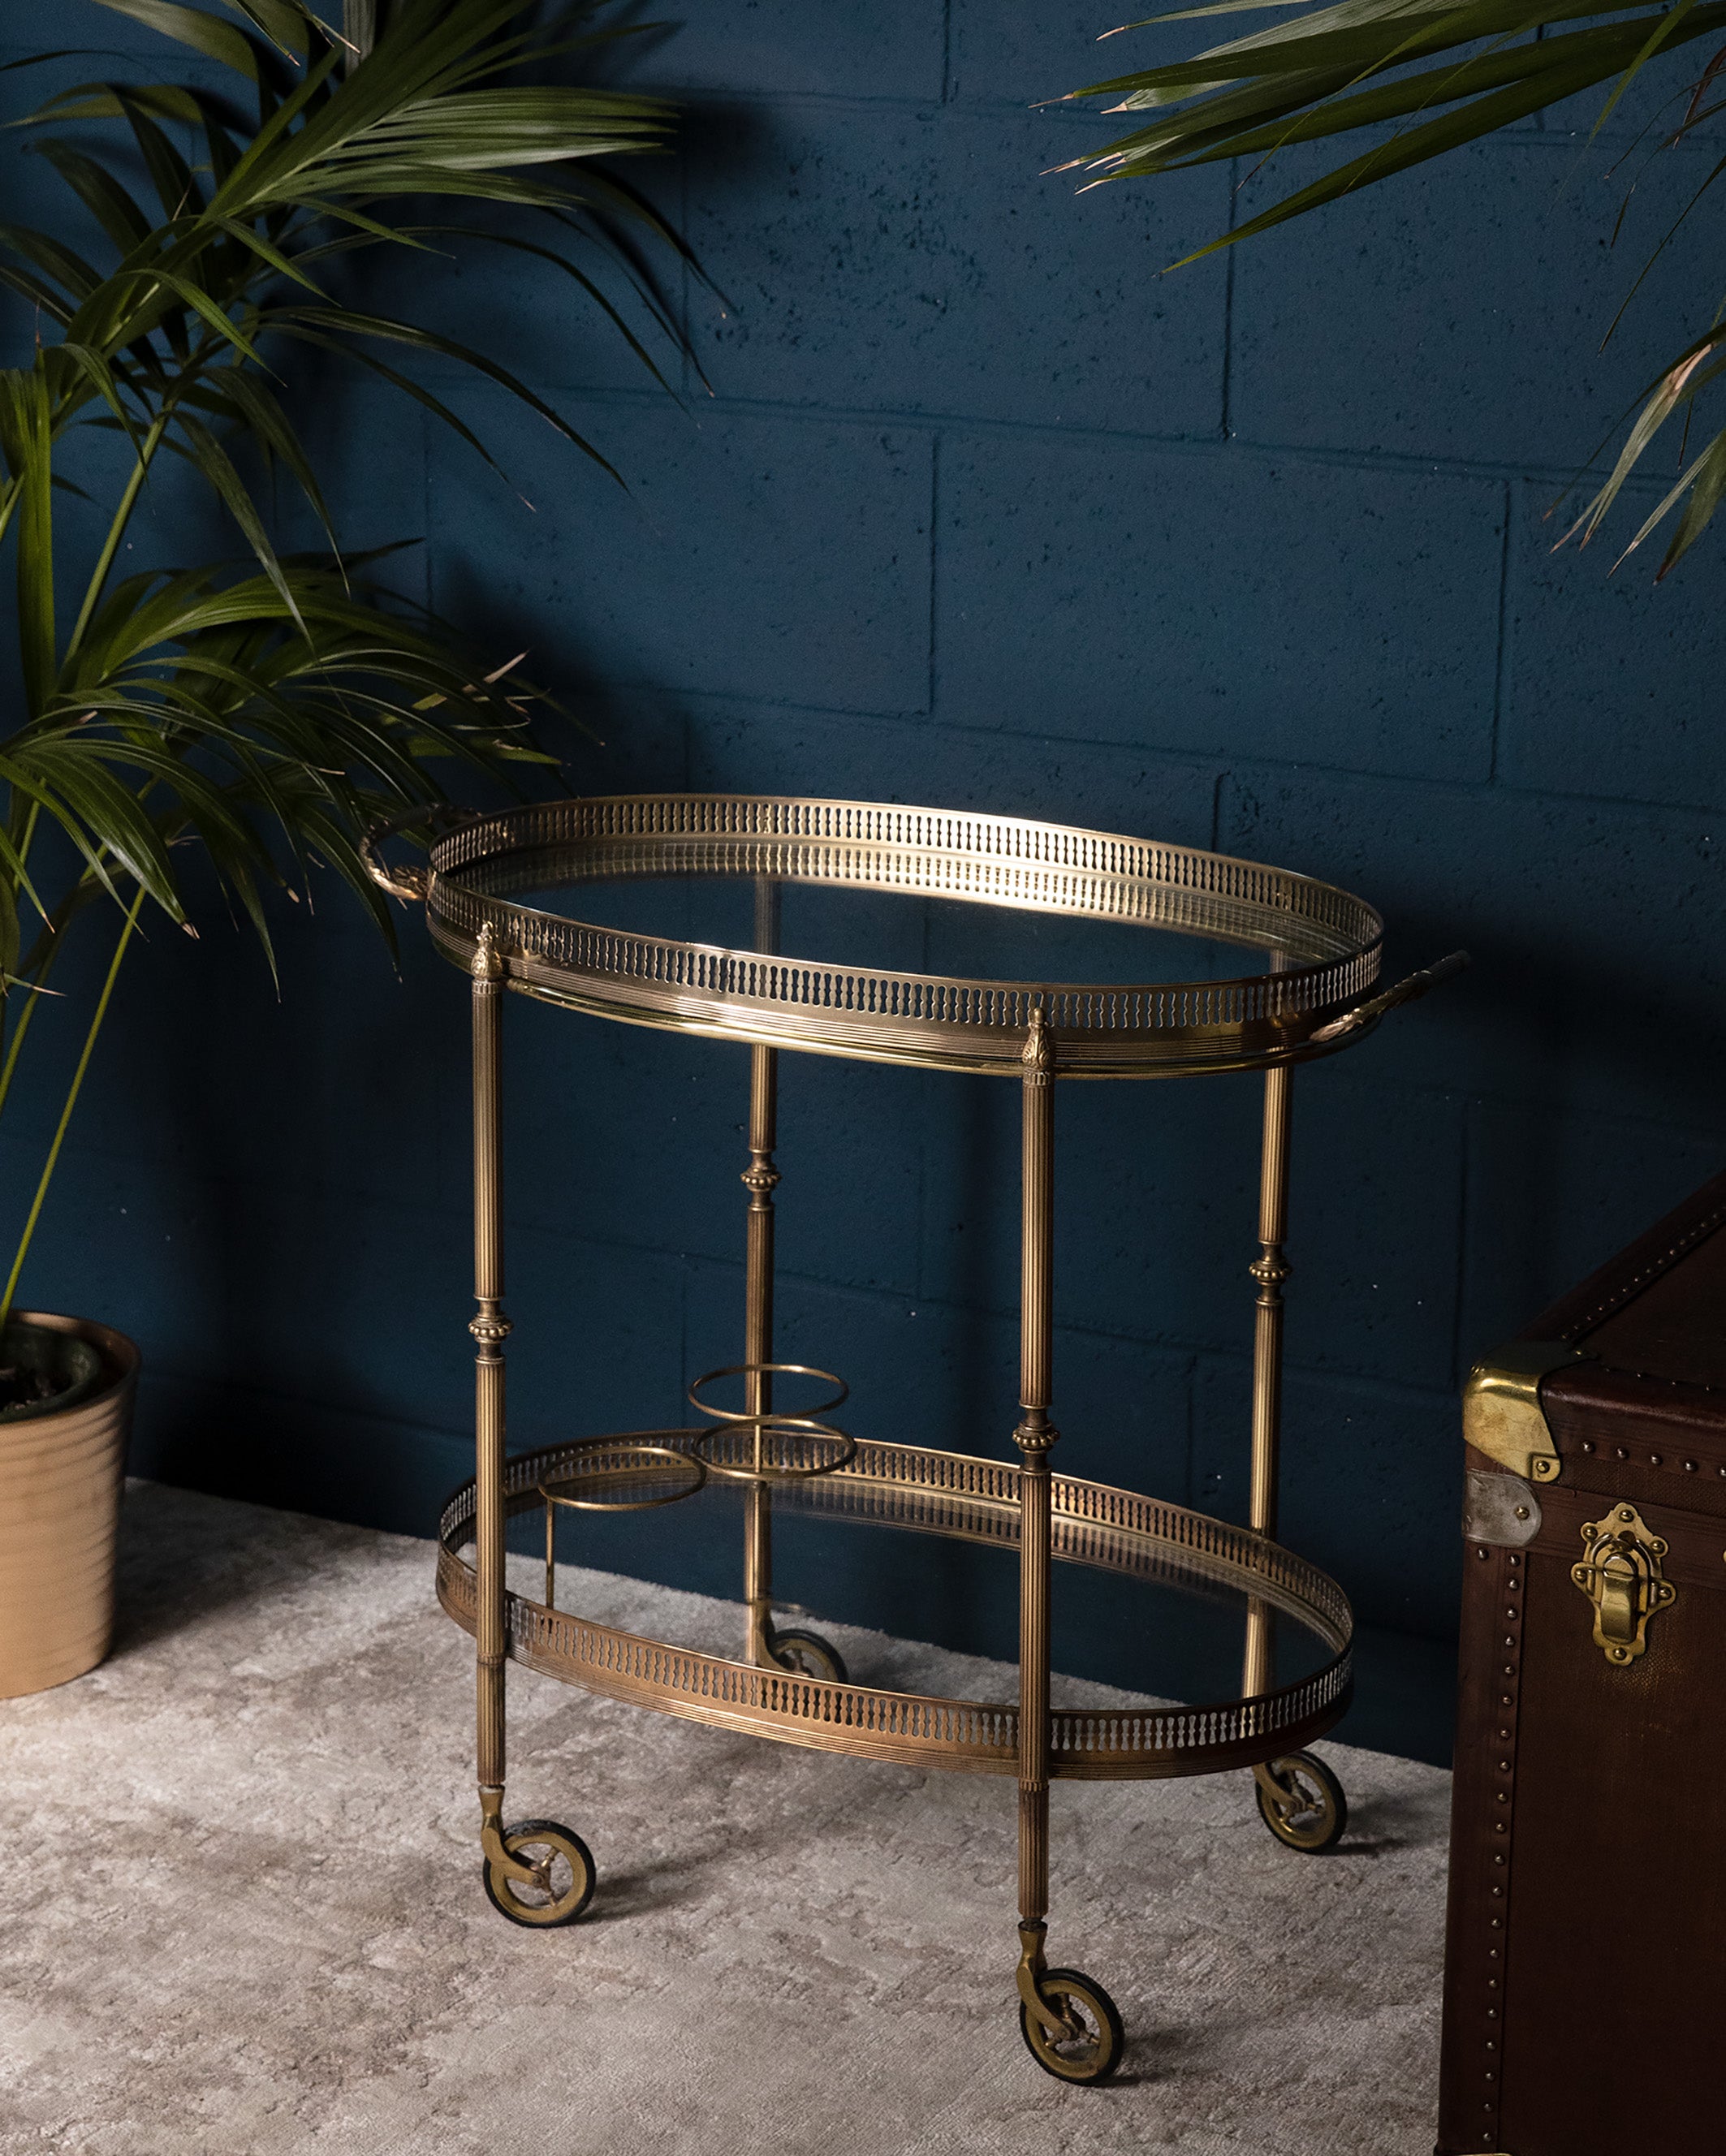 Products Carrello ovale in ottone dorato modello Galleria - 1960 - "Gallery" design oval gold brass Bar Cart